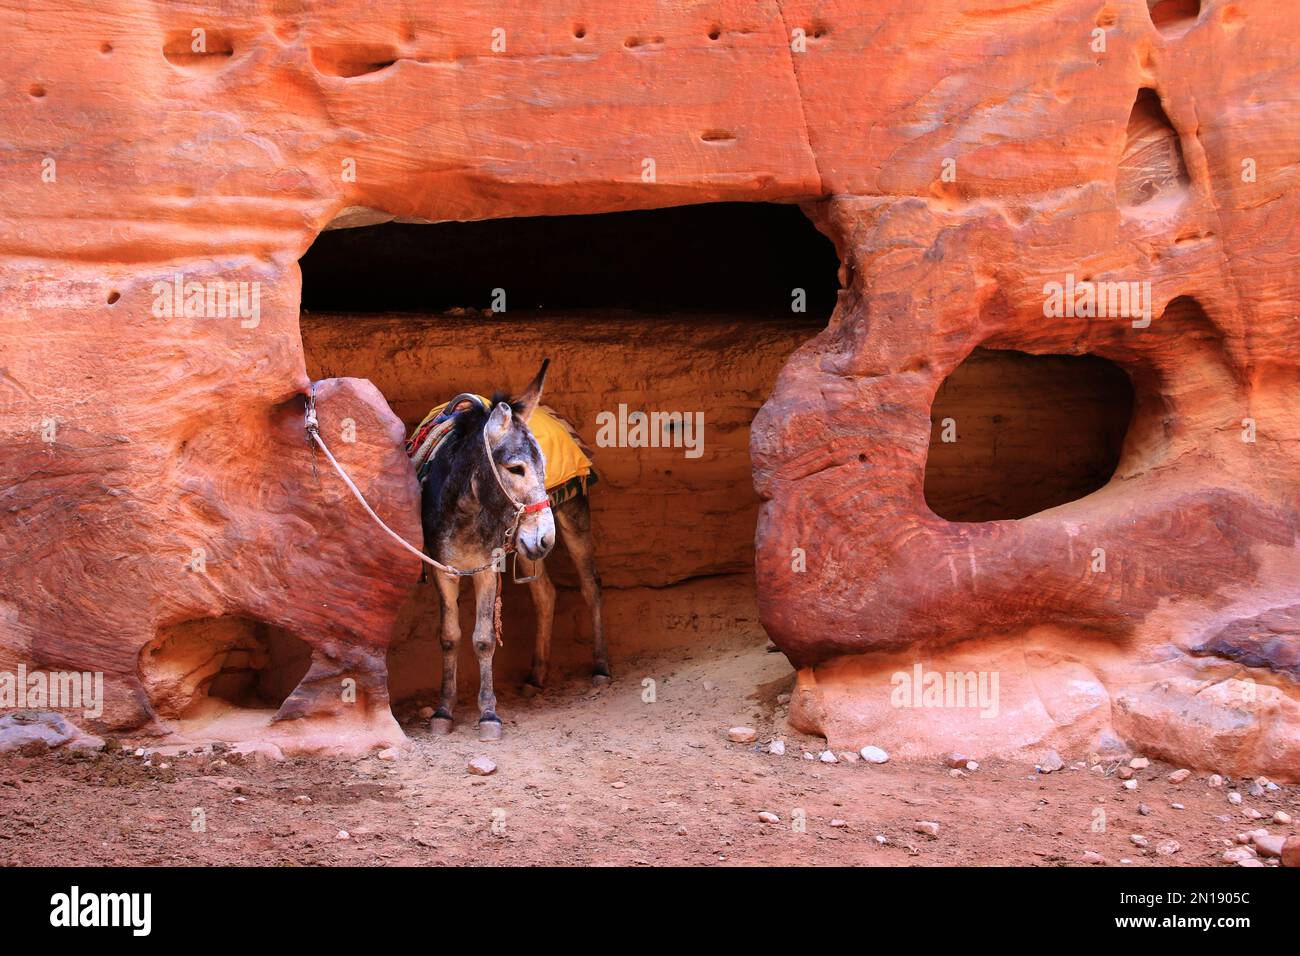 Équitation ânes Petra, Jordanie Banque D'Images